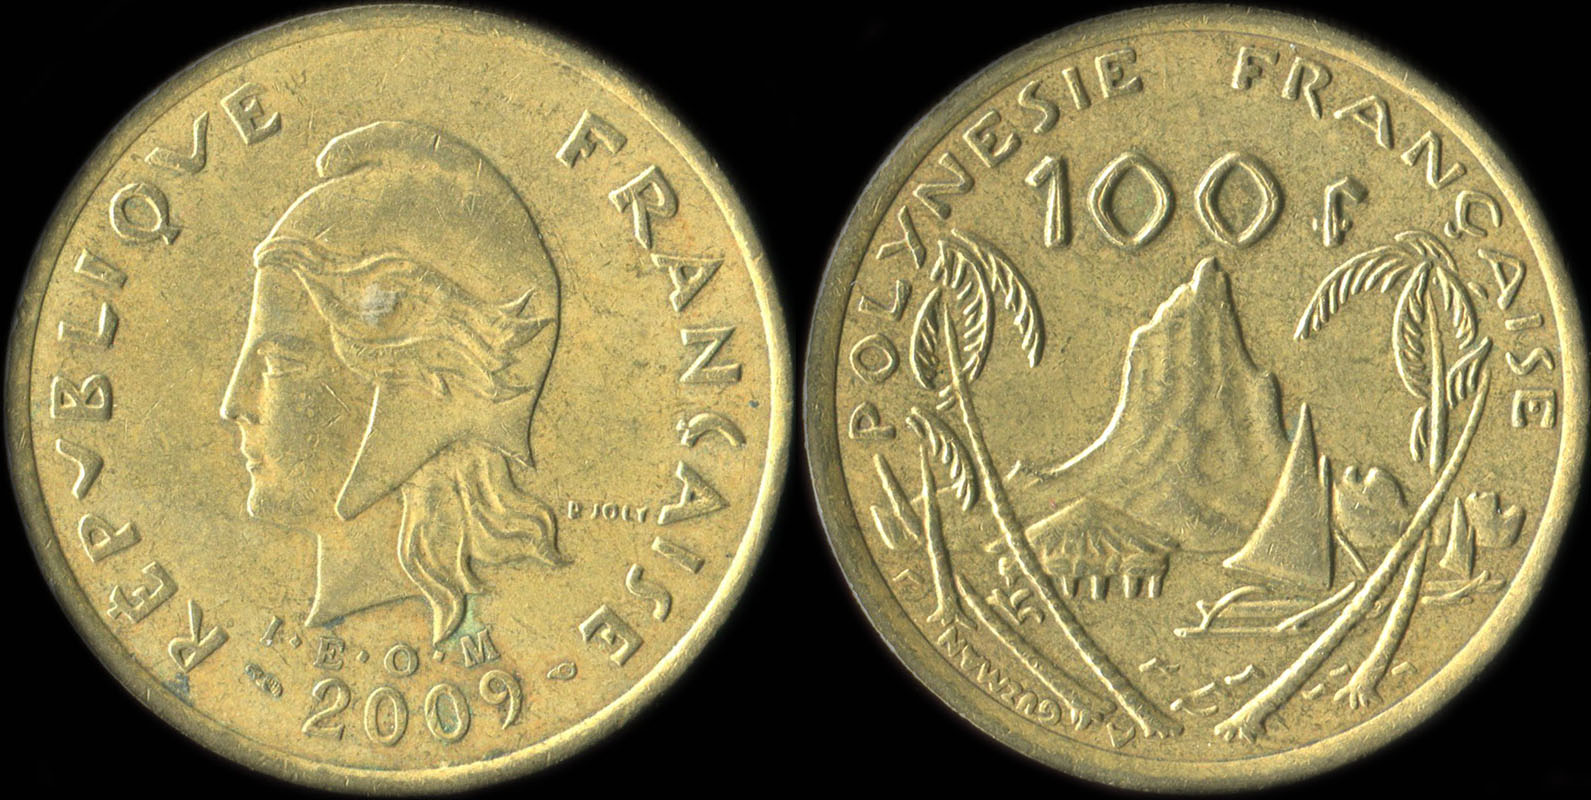 Pice de 100 francs 2009 - I.E.O.M. Polynsie franaise